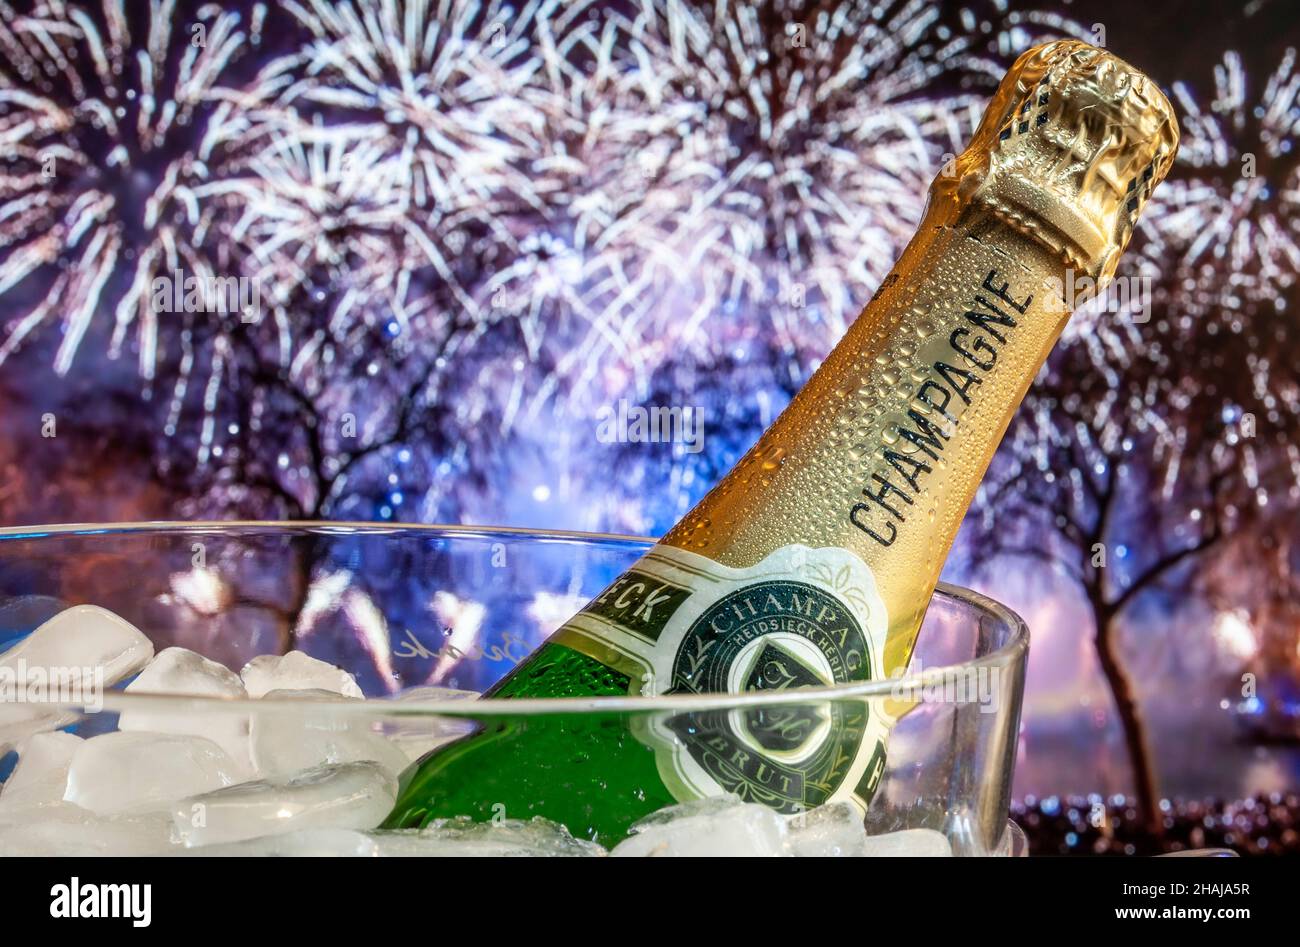 Fuegos artificiales Champagne 2022 sobre hielo en la nevera de vino con fuegos artificiales de fiesta de celebración detrás. Charles Heidseck etiqueta Francia francesa Foto de stock